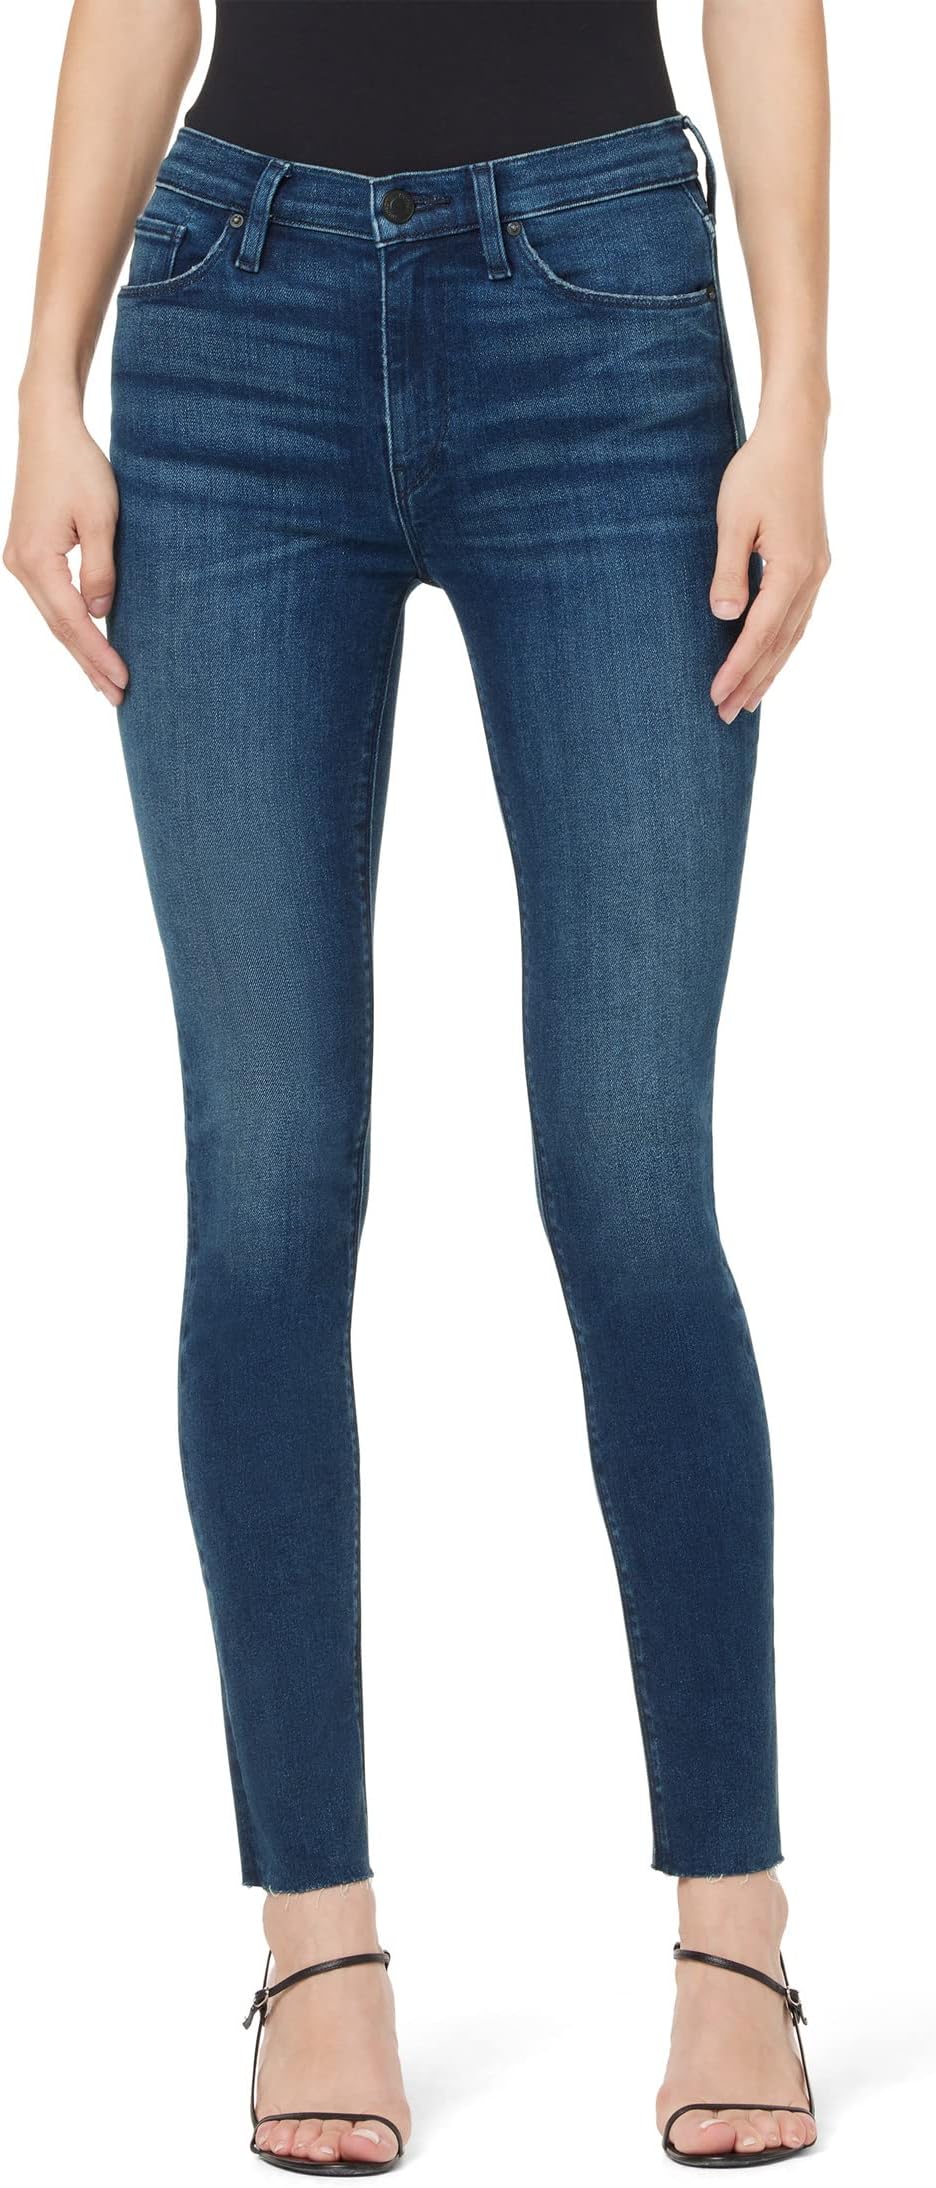 Джинсы Barbara High-Rise Super Skinny Ankle in Eternal Clean Hudson Jeans, цвет Eternal Clean